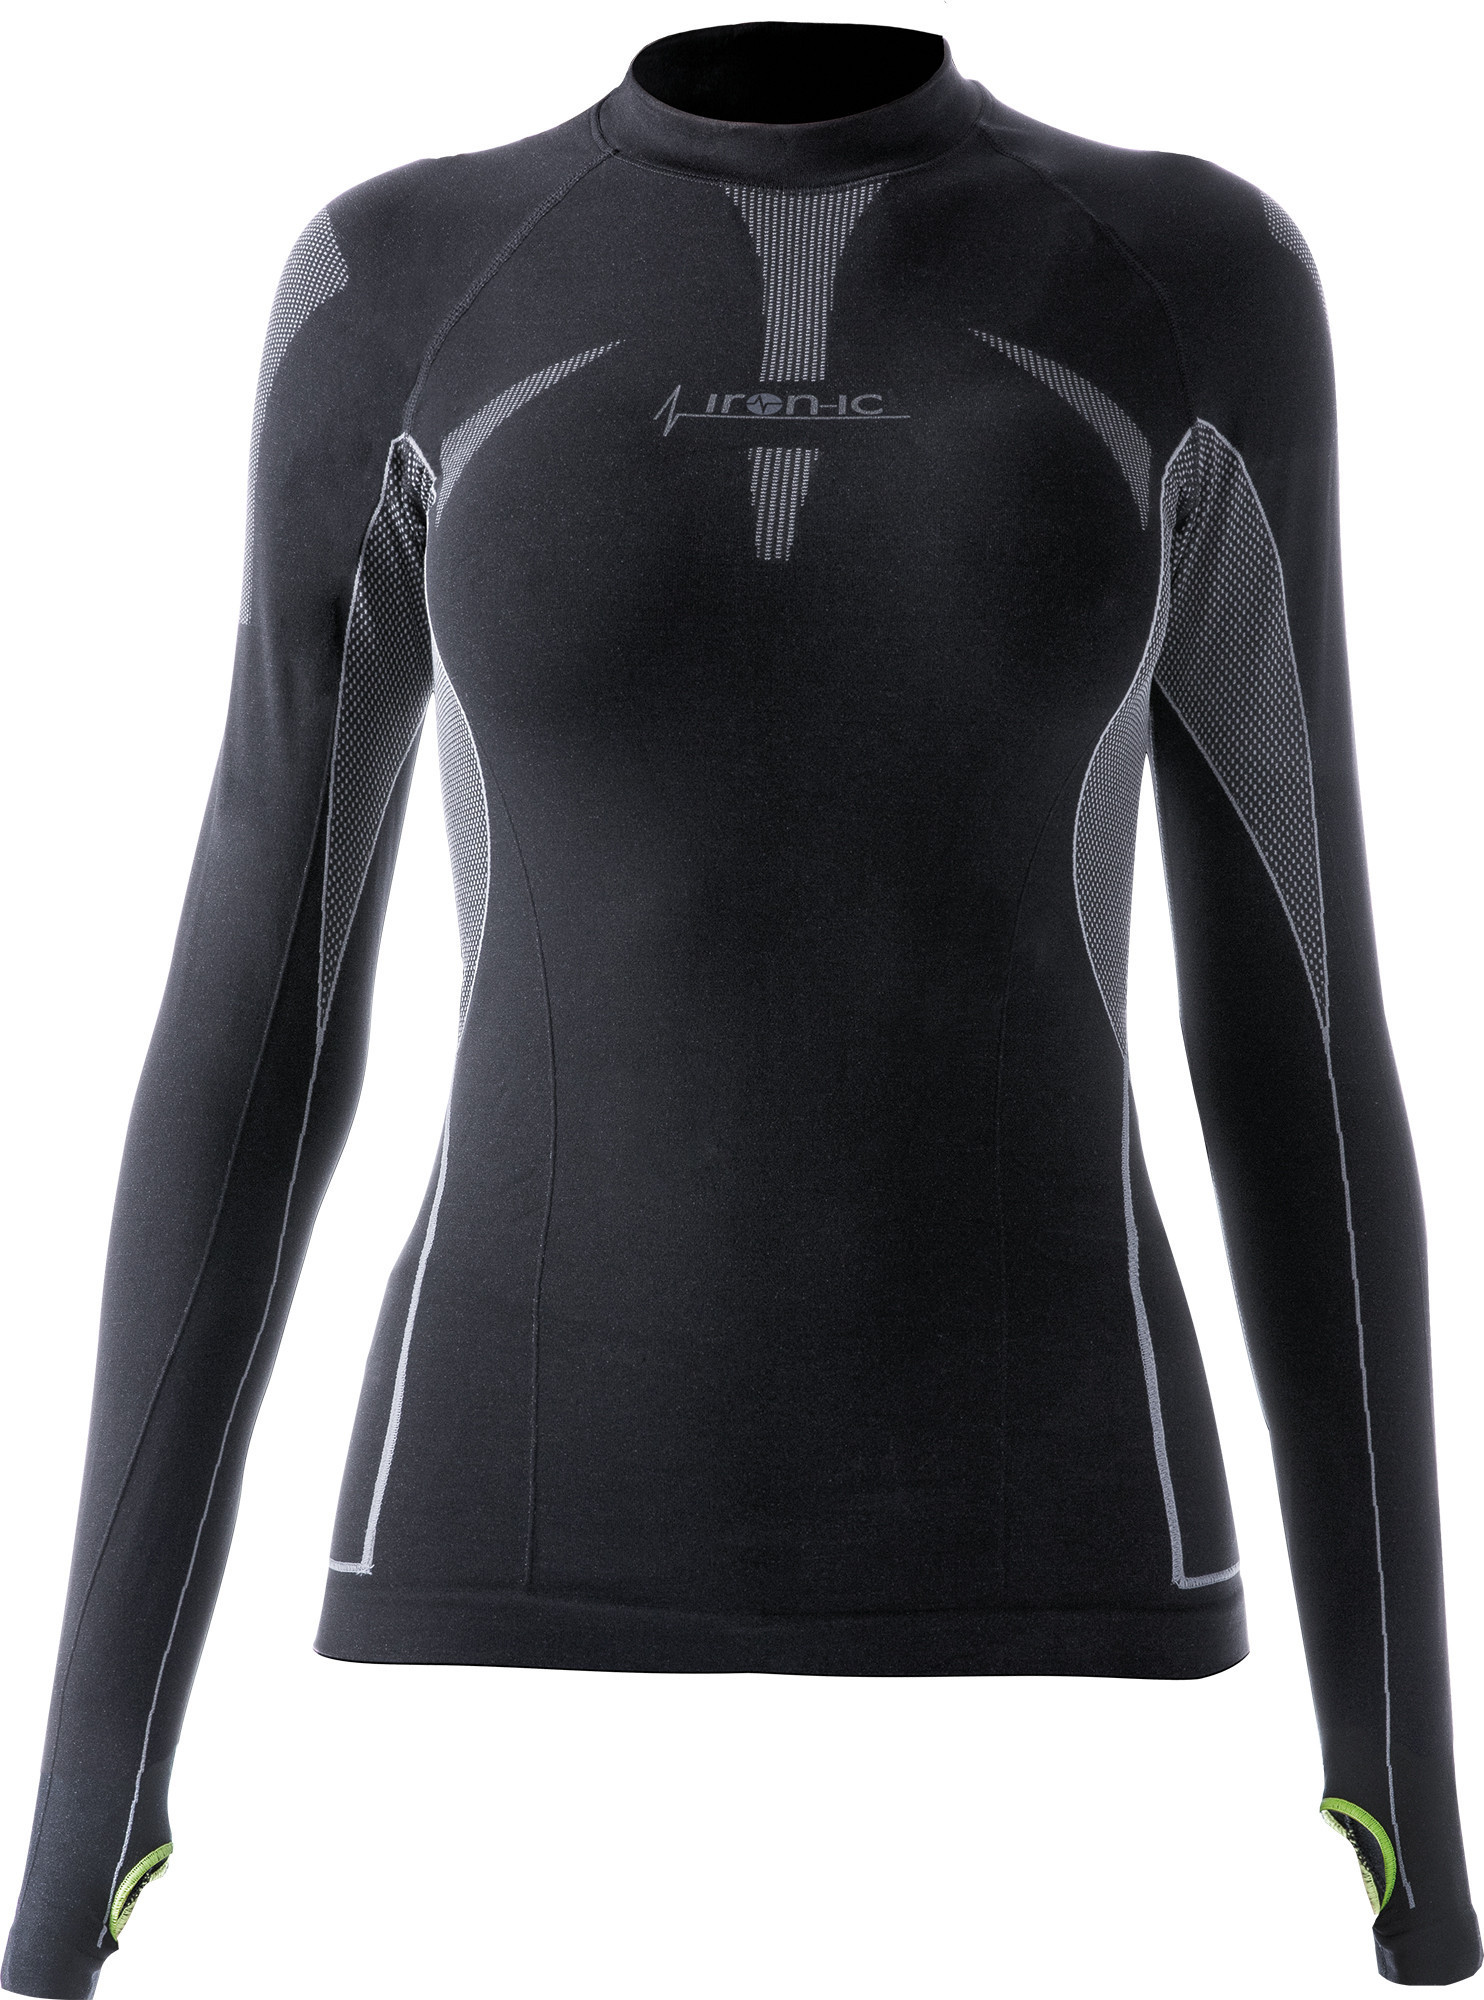 Dámské sportovní tričko s dlouhým rukávem IRON-IC - černá Barva: Černá, Velikost: M/L